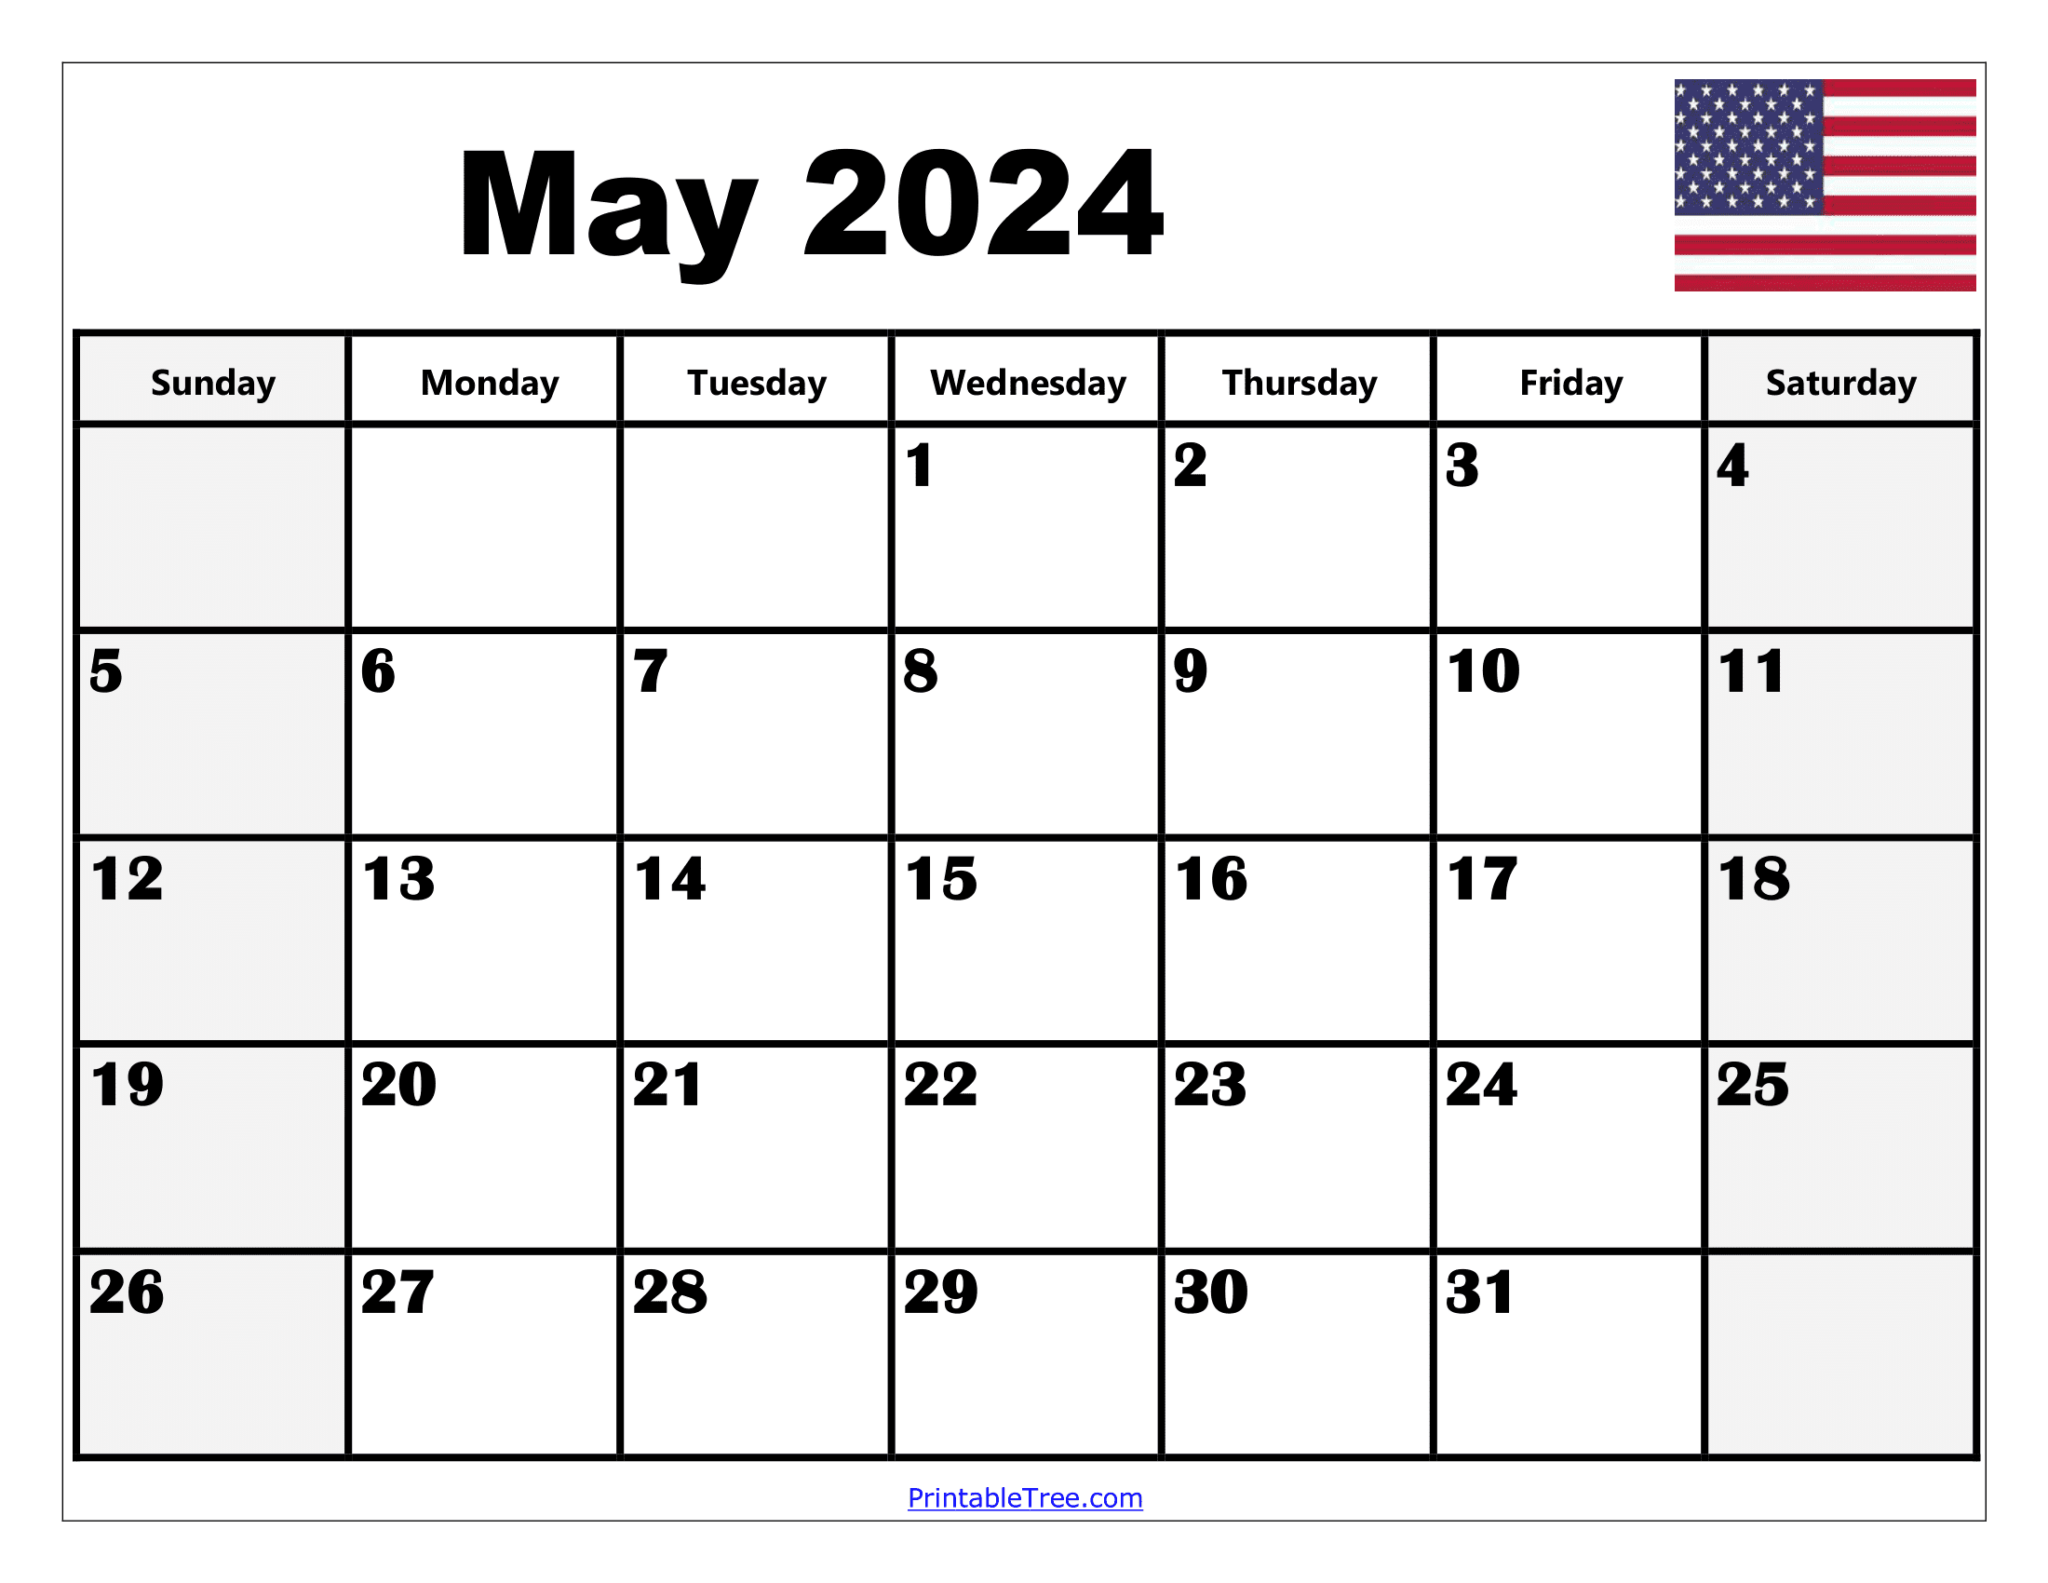 printable-calendar-2024-may-free-printable